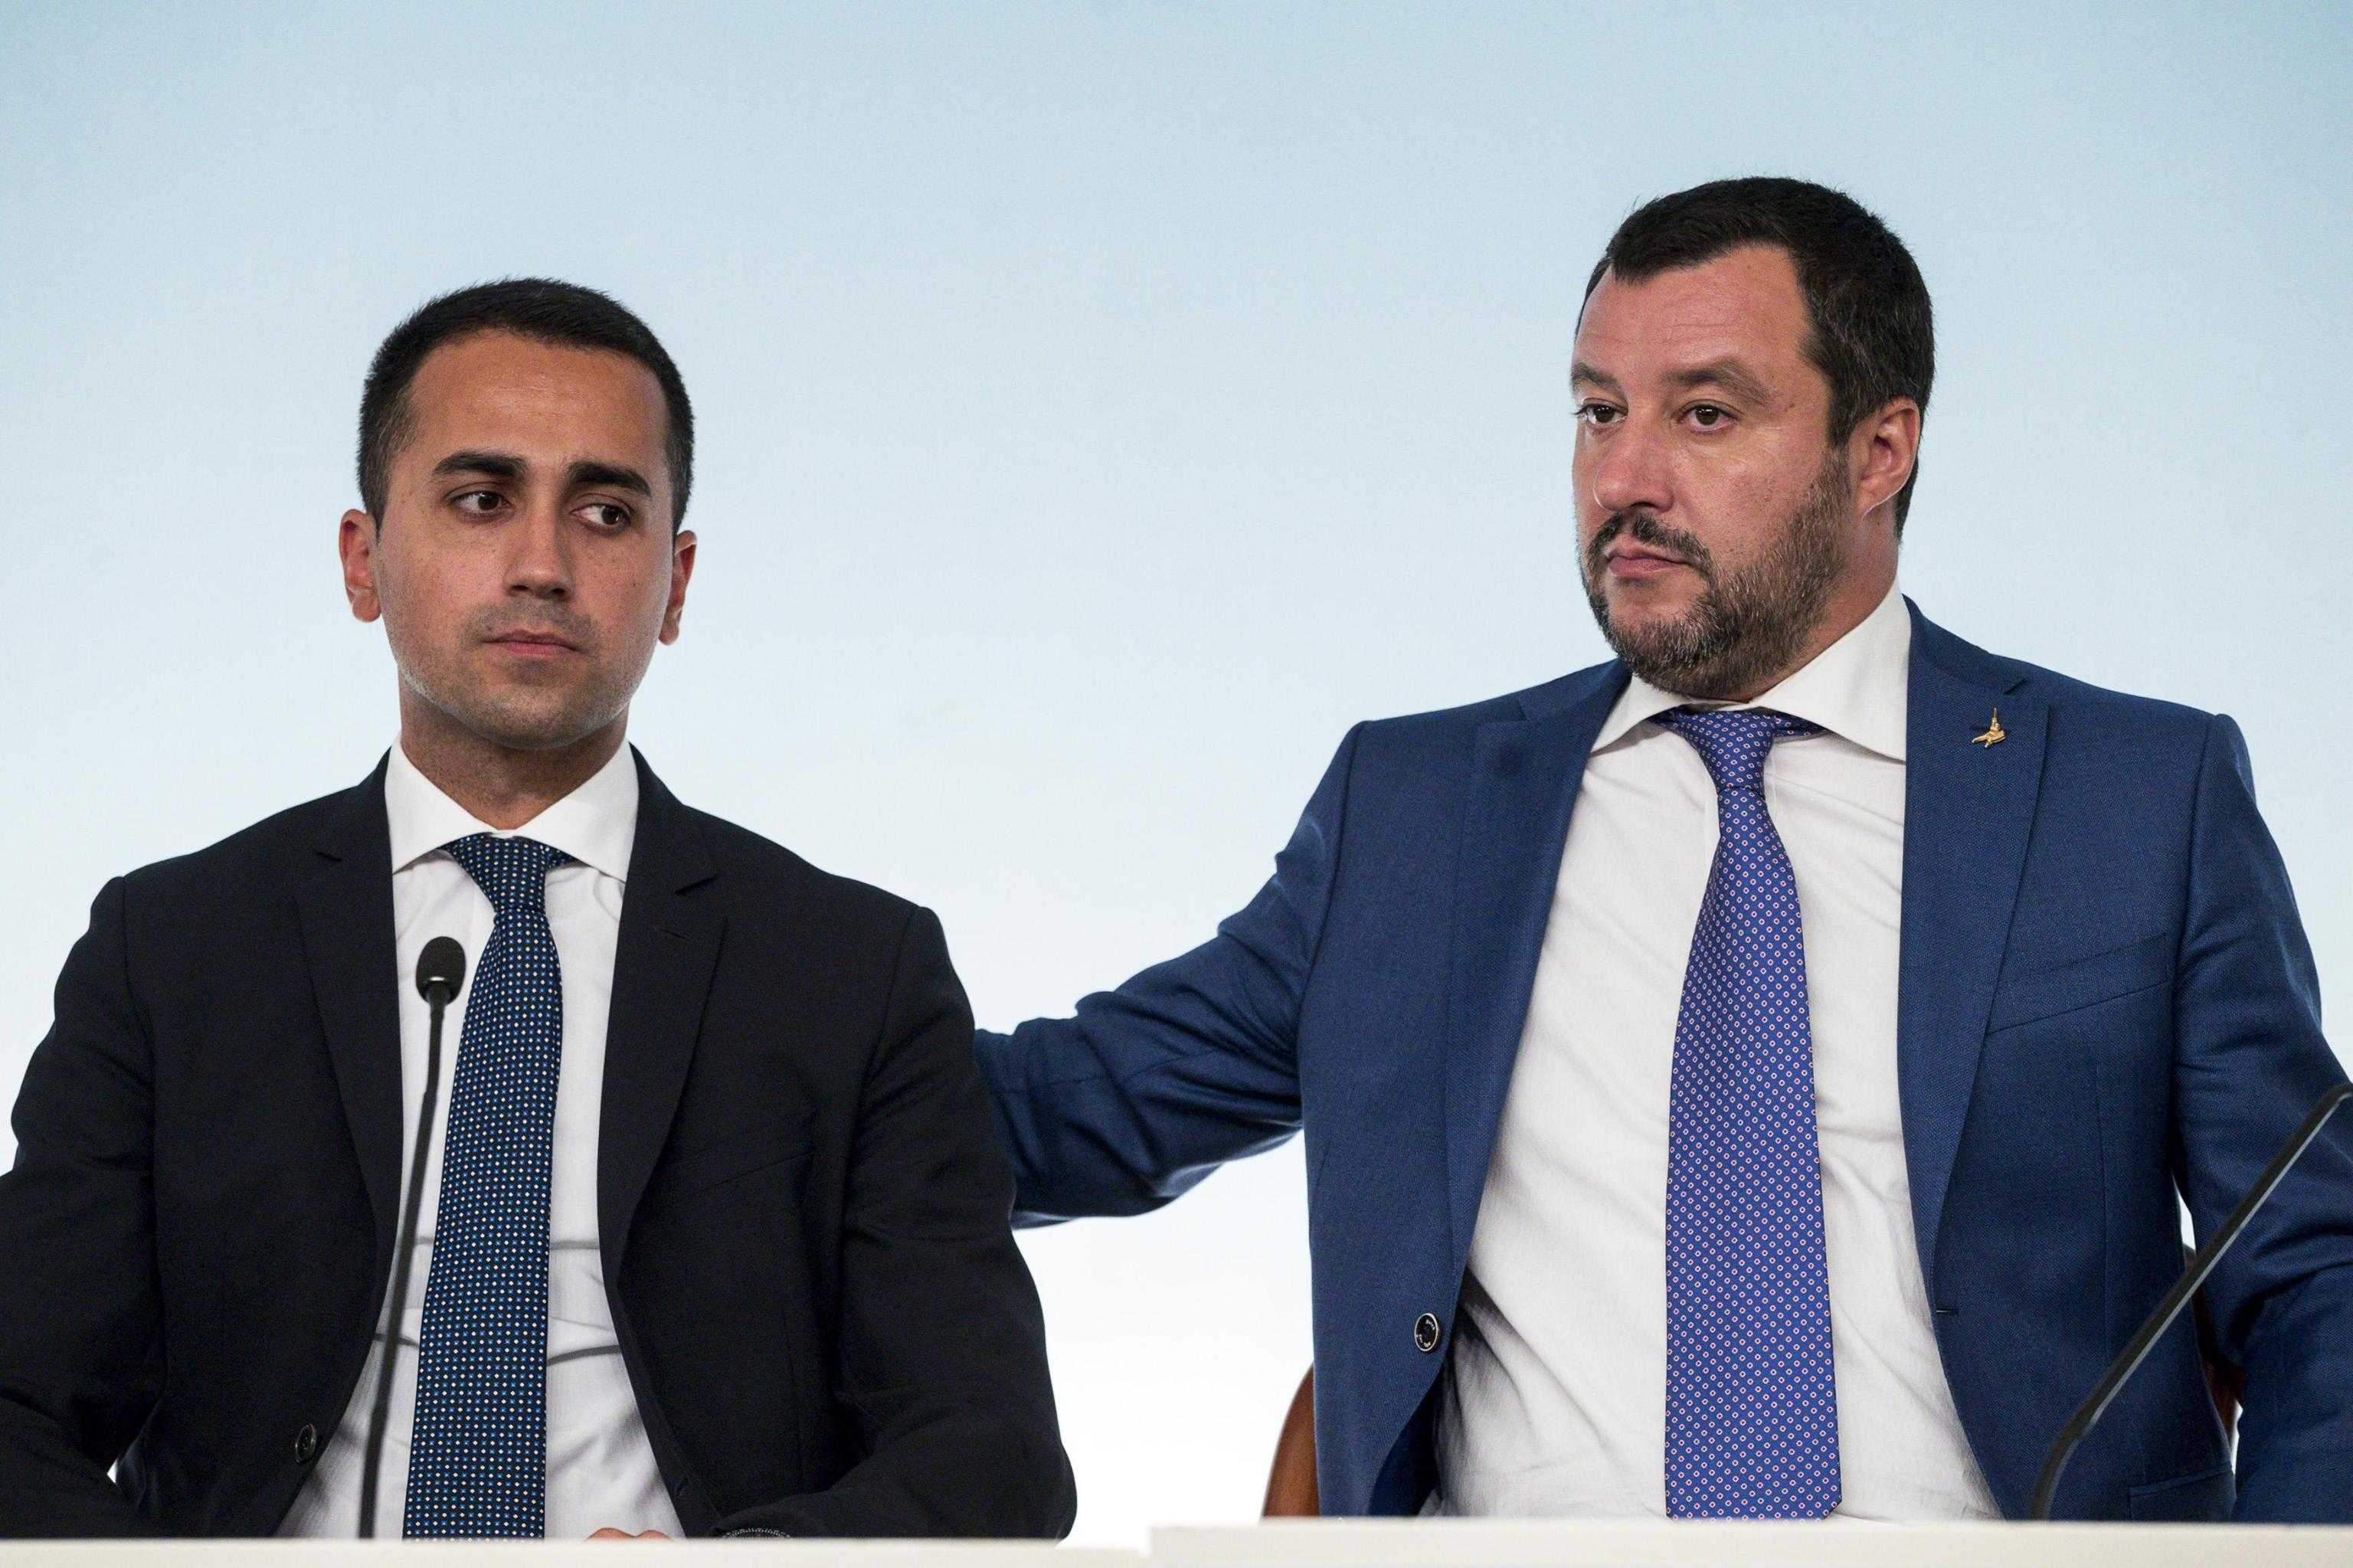 Salvini, arduo governare con M5S. Siri, Conte non giudice. Iva, dopo Europee i 23mld non serviranno